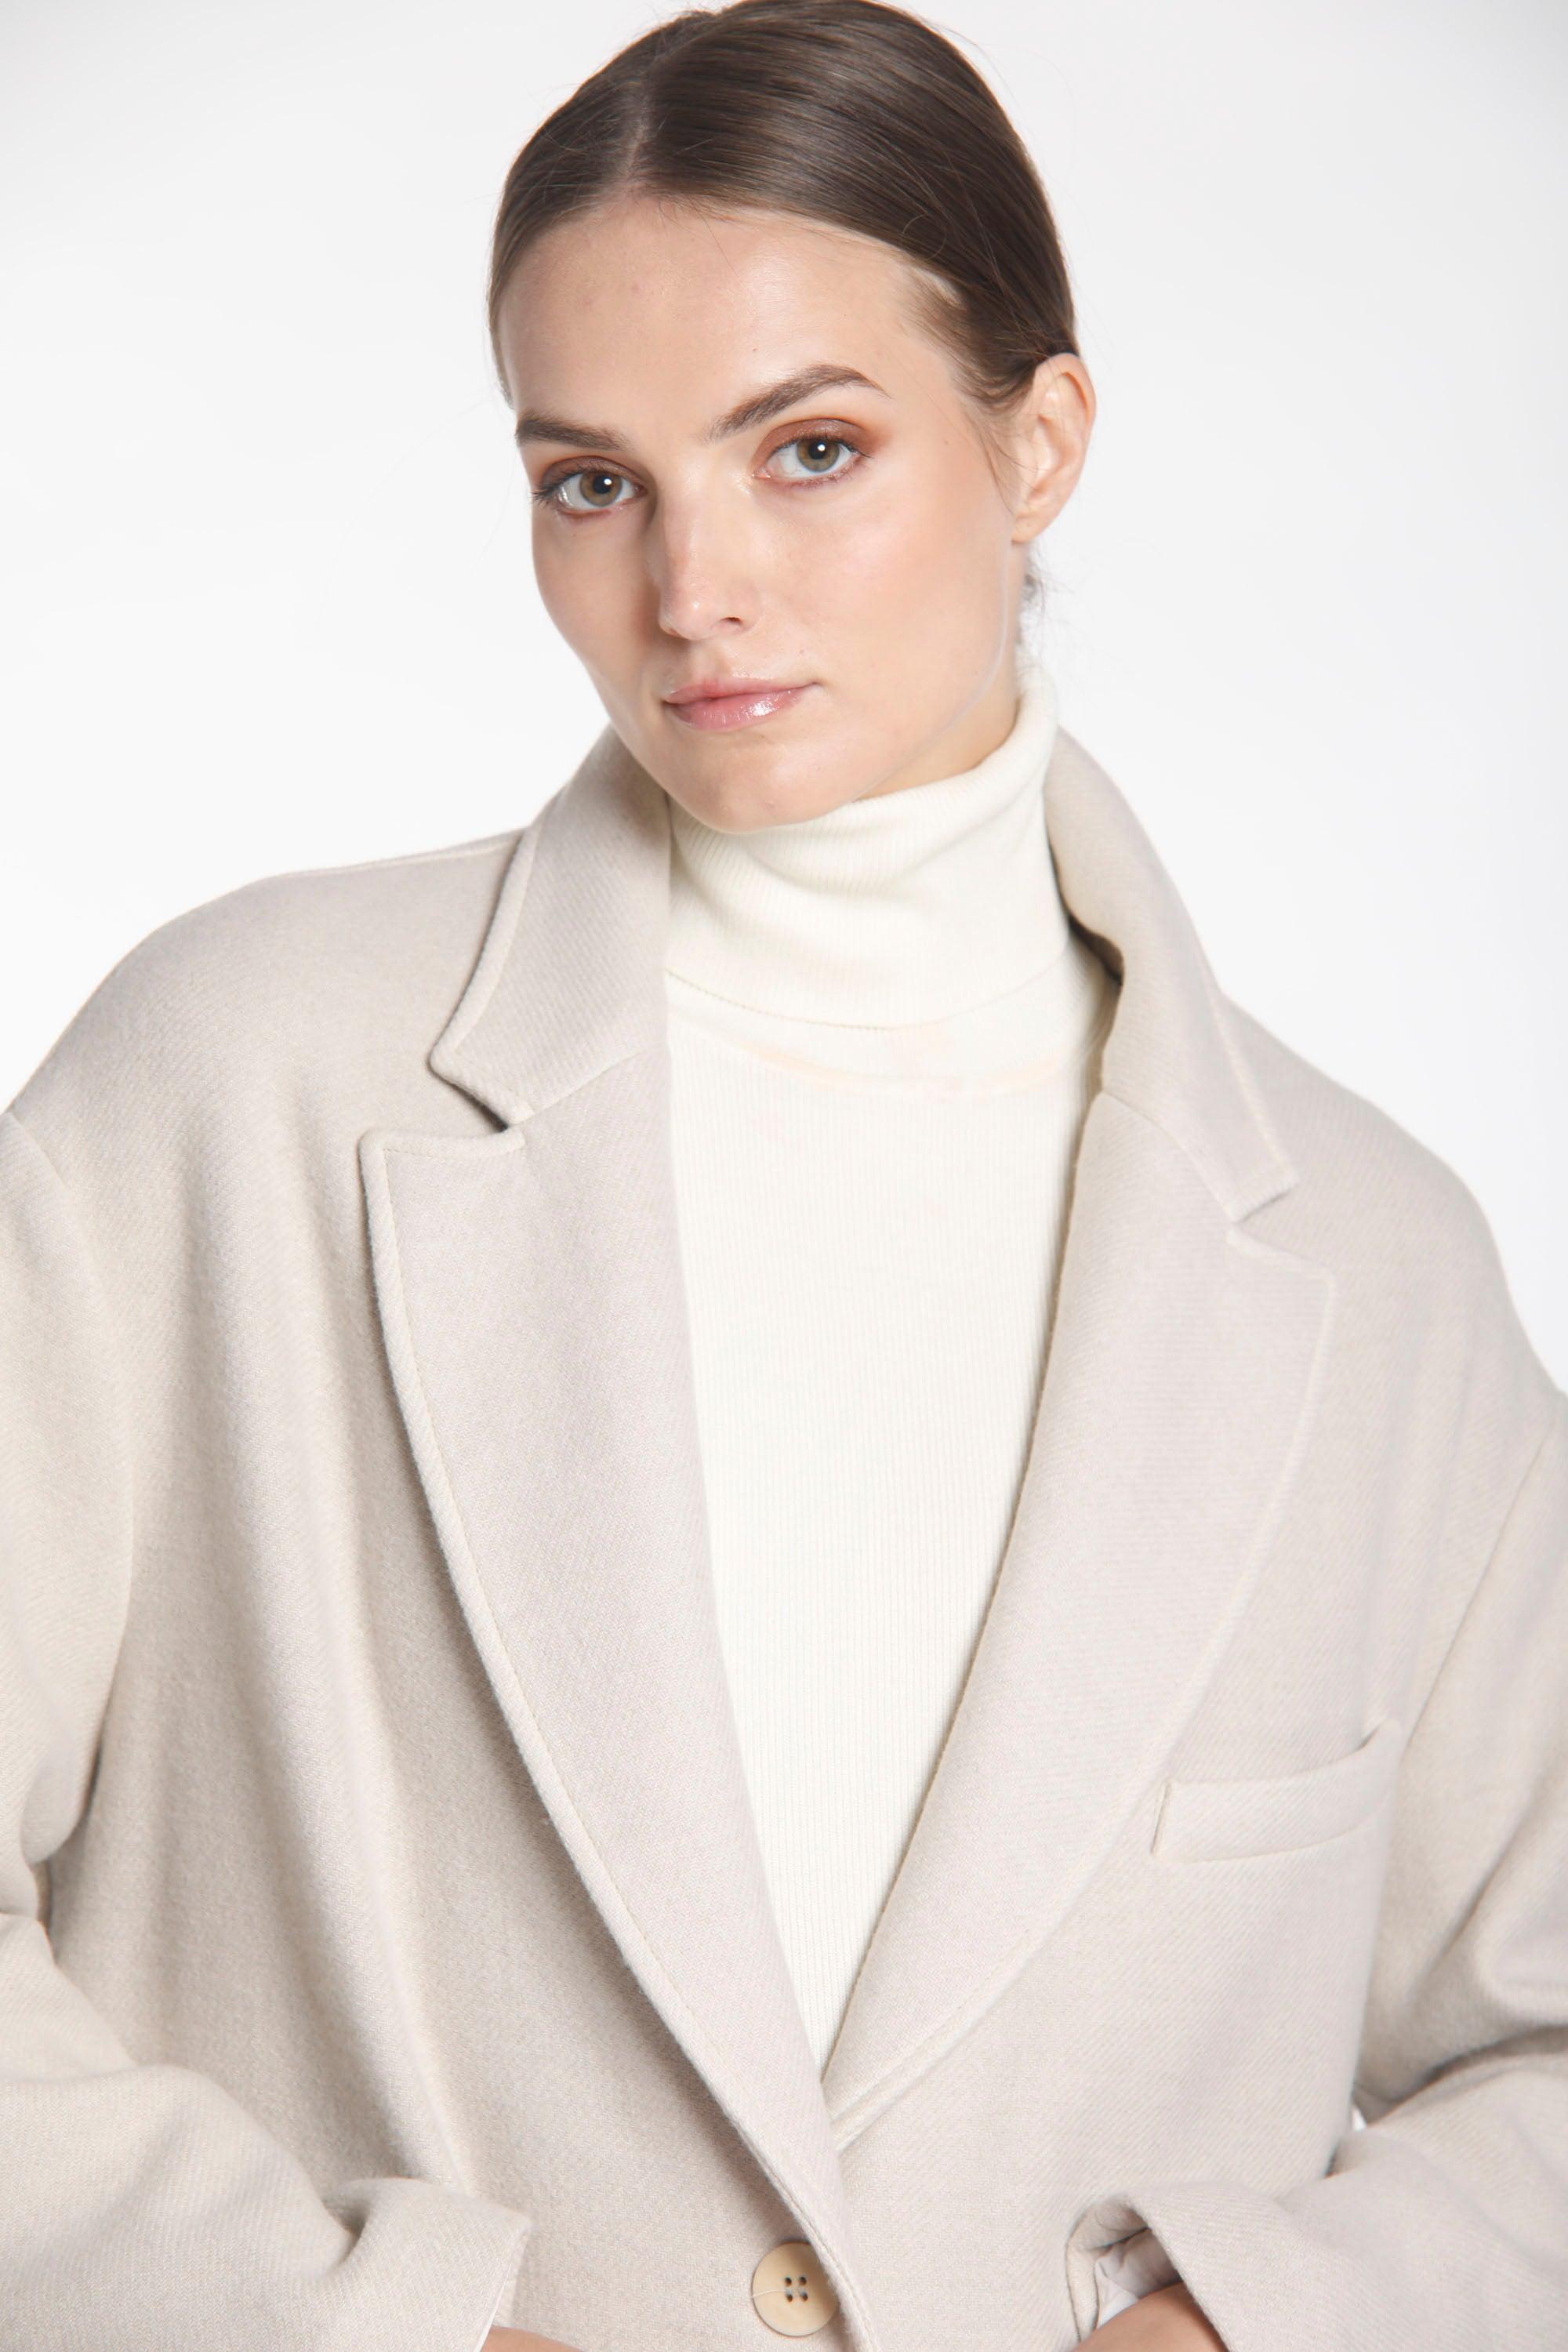 Image 2 de manteau femme en laine couleur glace, modèle Isabel Coat par Mason's